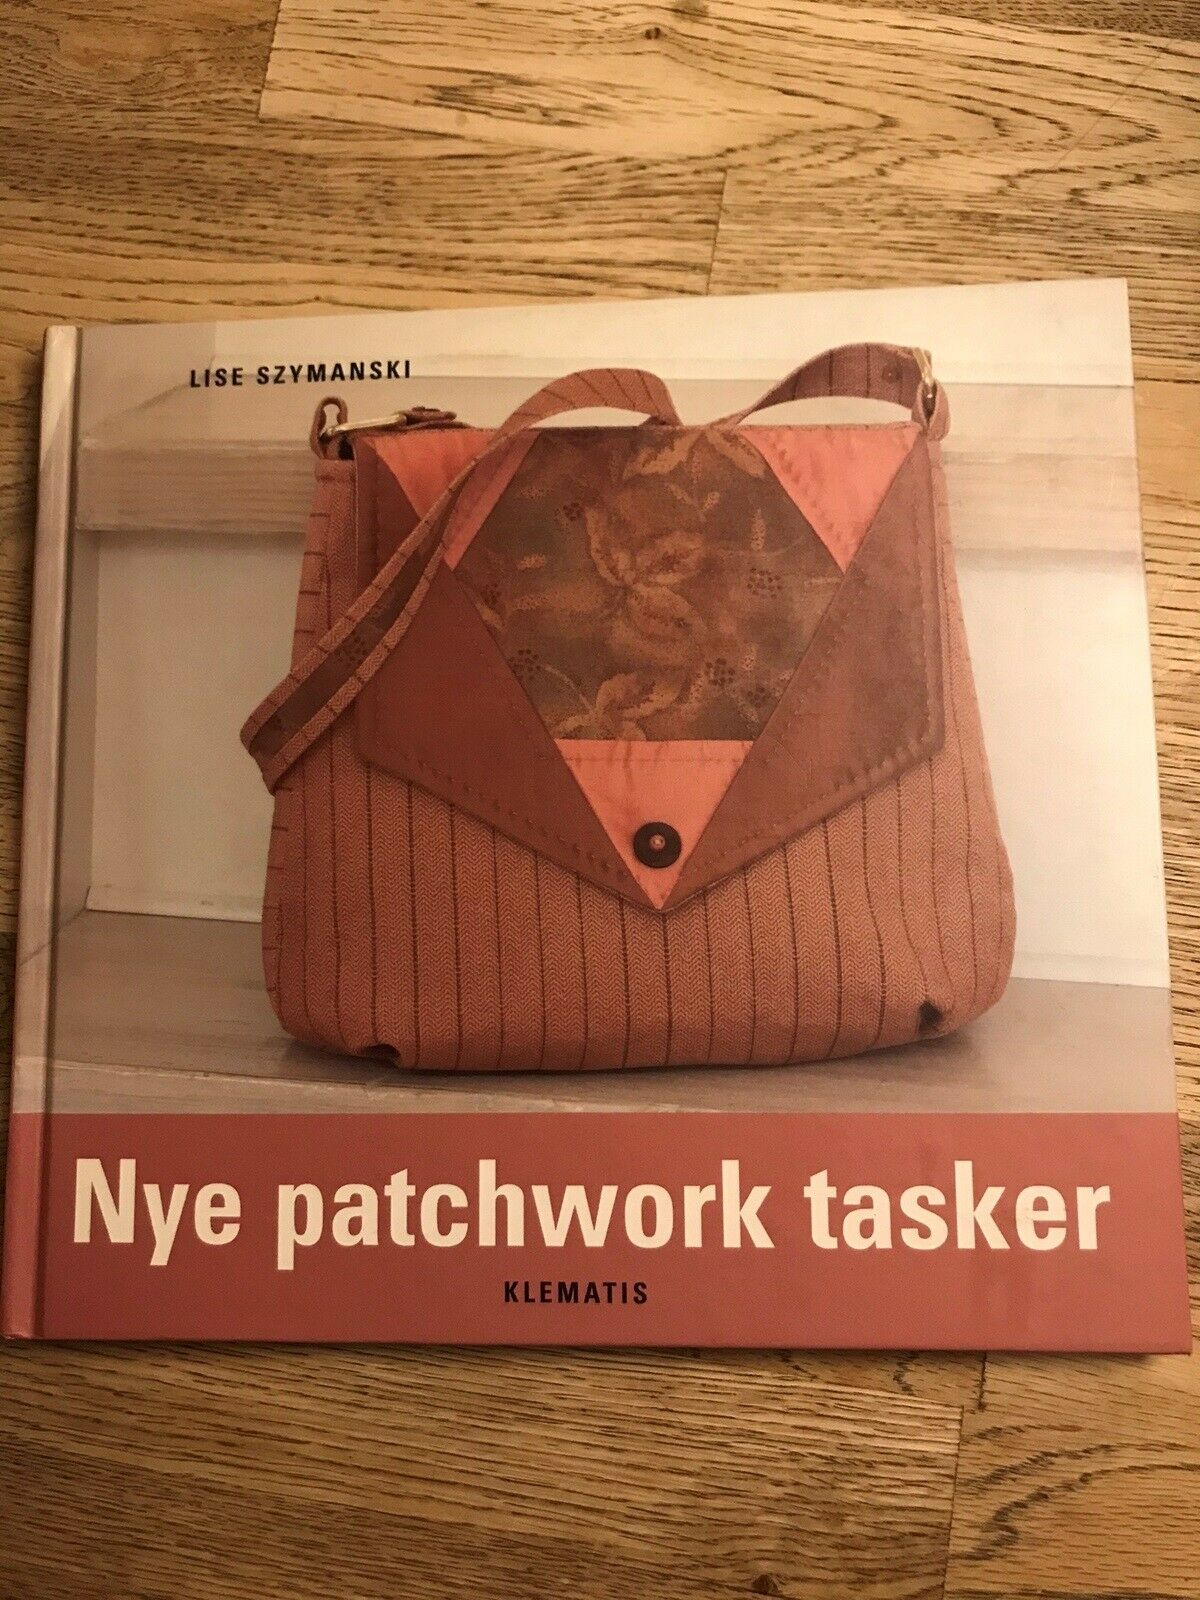 Taiko mave Bløde fødder Lee Nye patchwork tasker, Lise Szymanski, emne: håndarbejde – dba.dk – Køb og  Salg af Nyt og Brugt